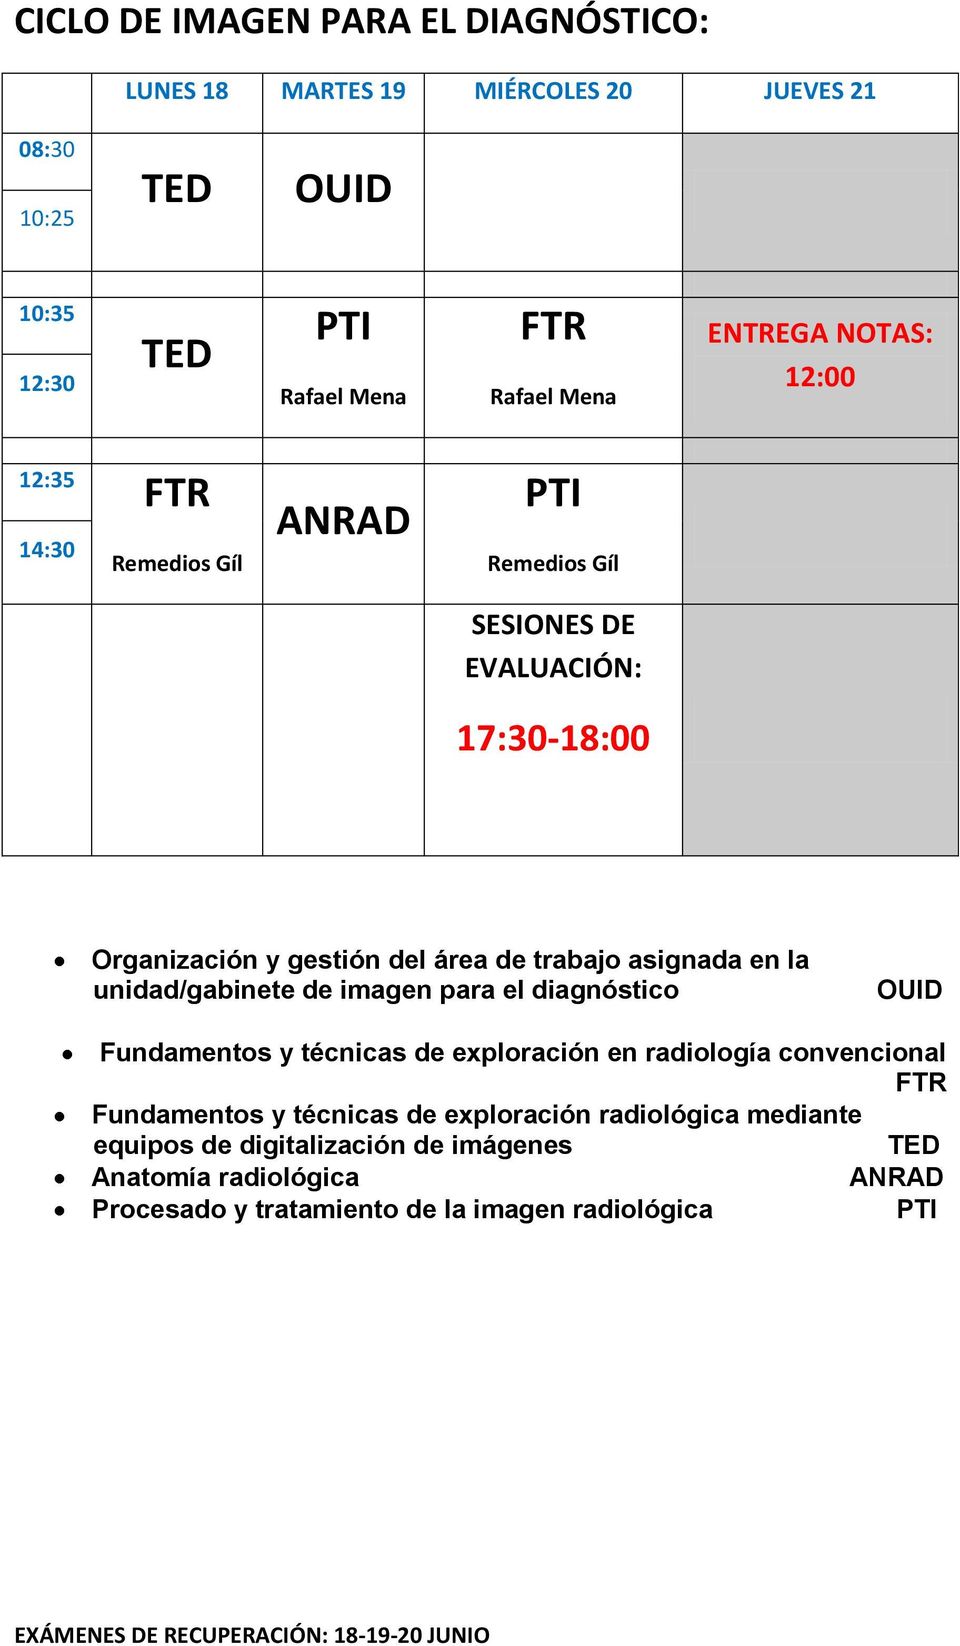 Fundamentos y técnicas de exploración en radiología convencional FTR Fundamentos y técnicas de exploración radiológica mediante equipos de